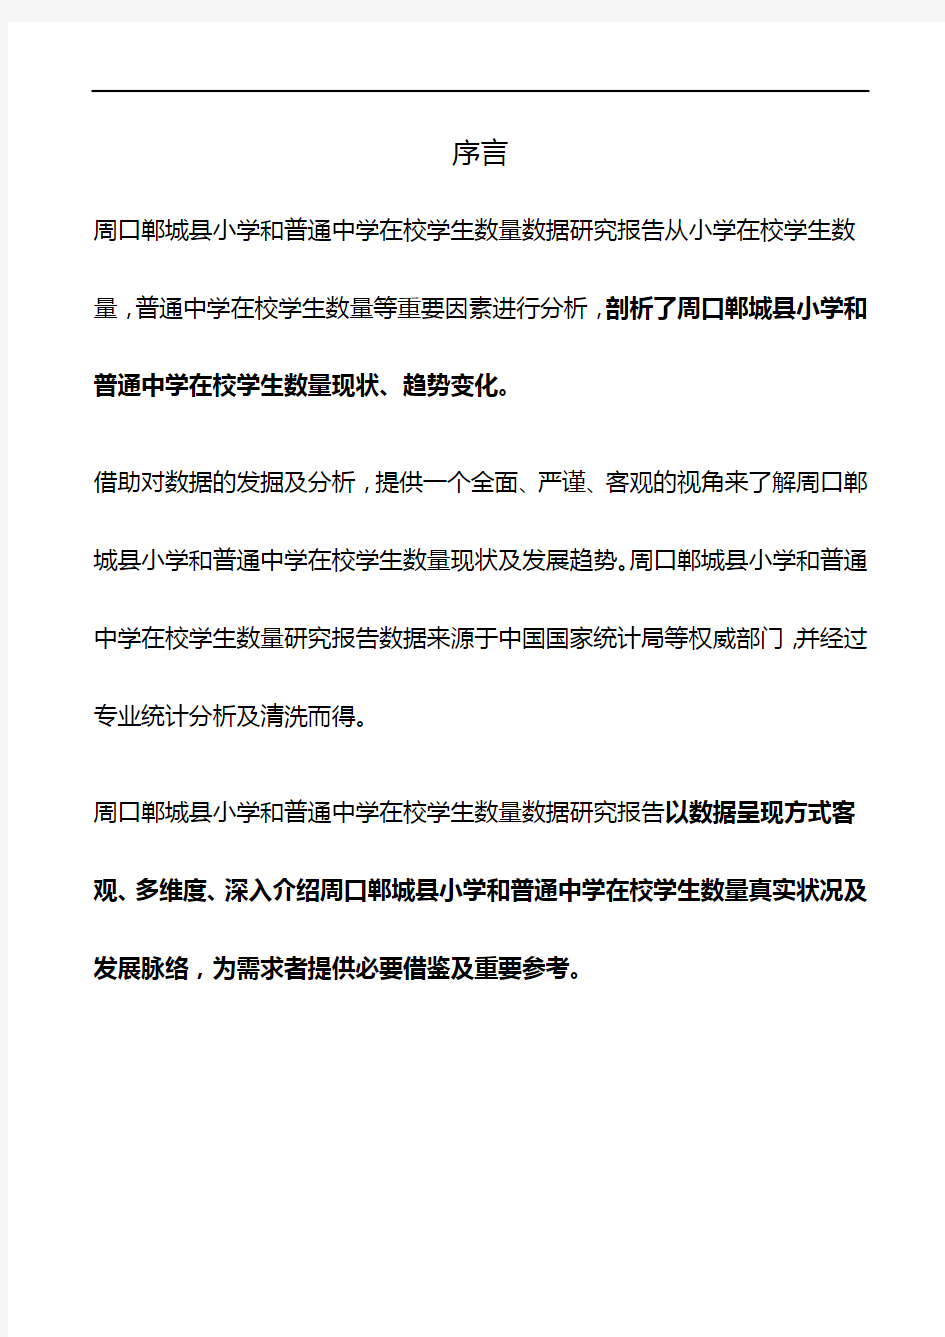 河南省周口郸城县小学和普通中学在校学生数量数据研究报告2019版